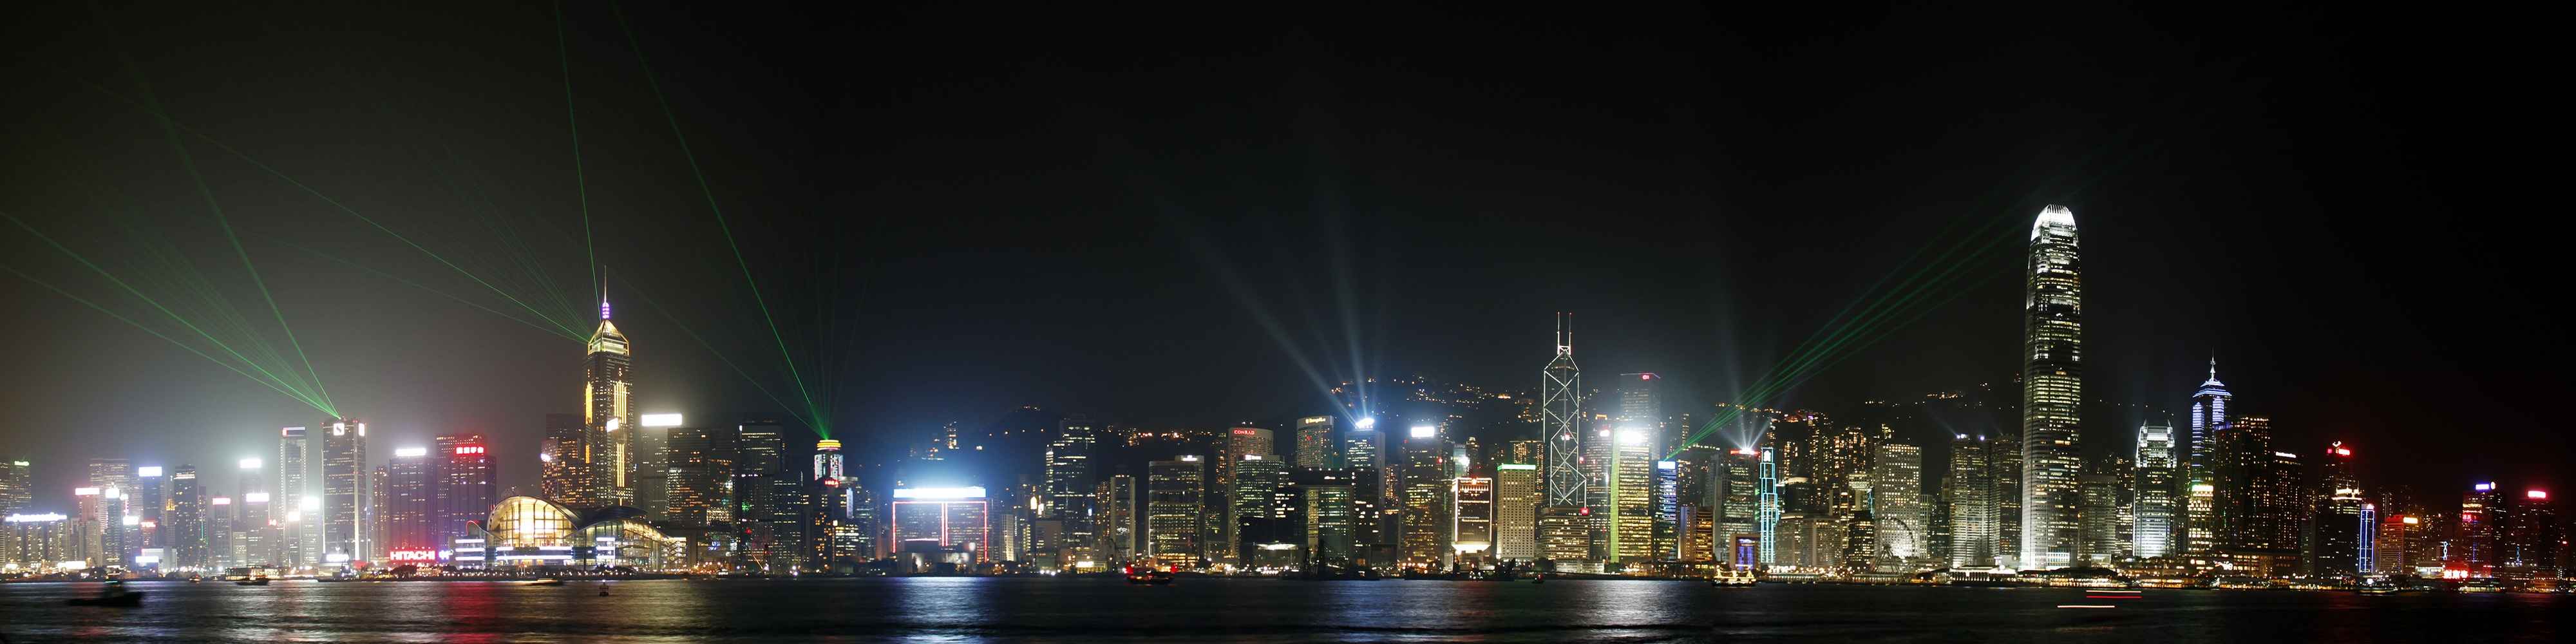 香港维多利亚港全景壁纸图片